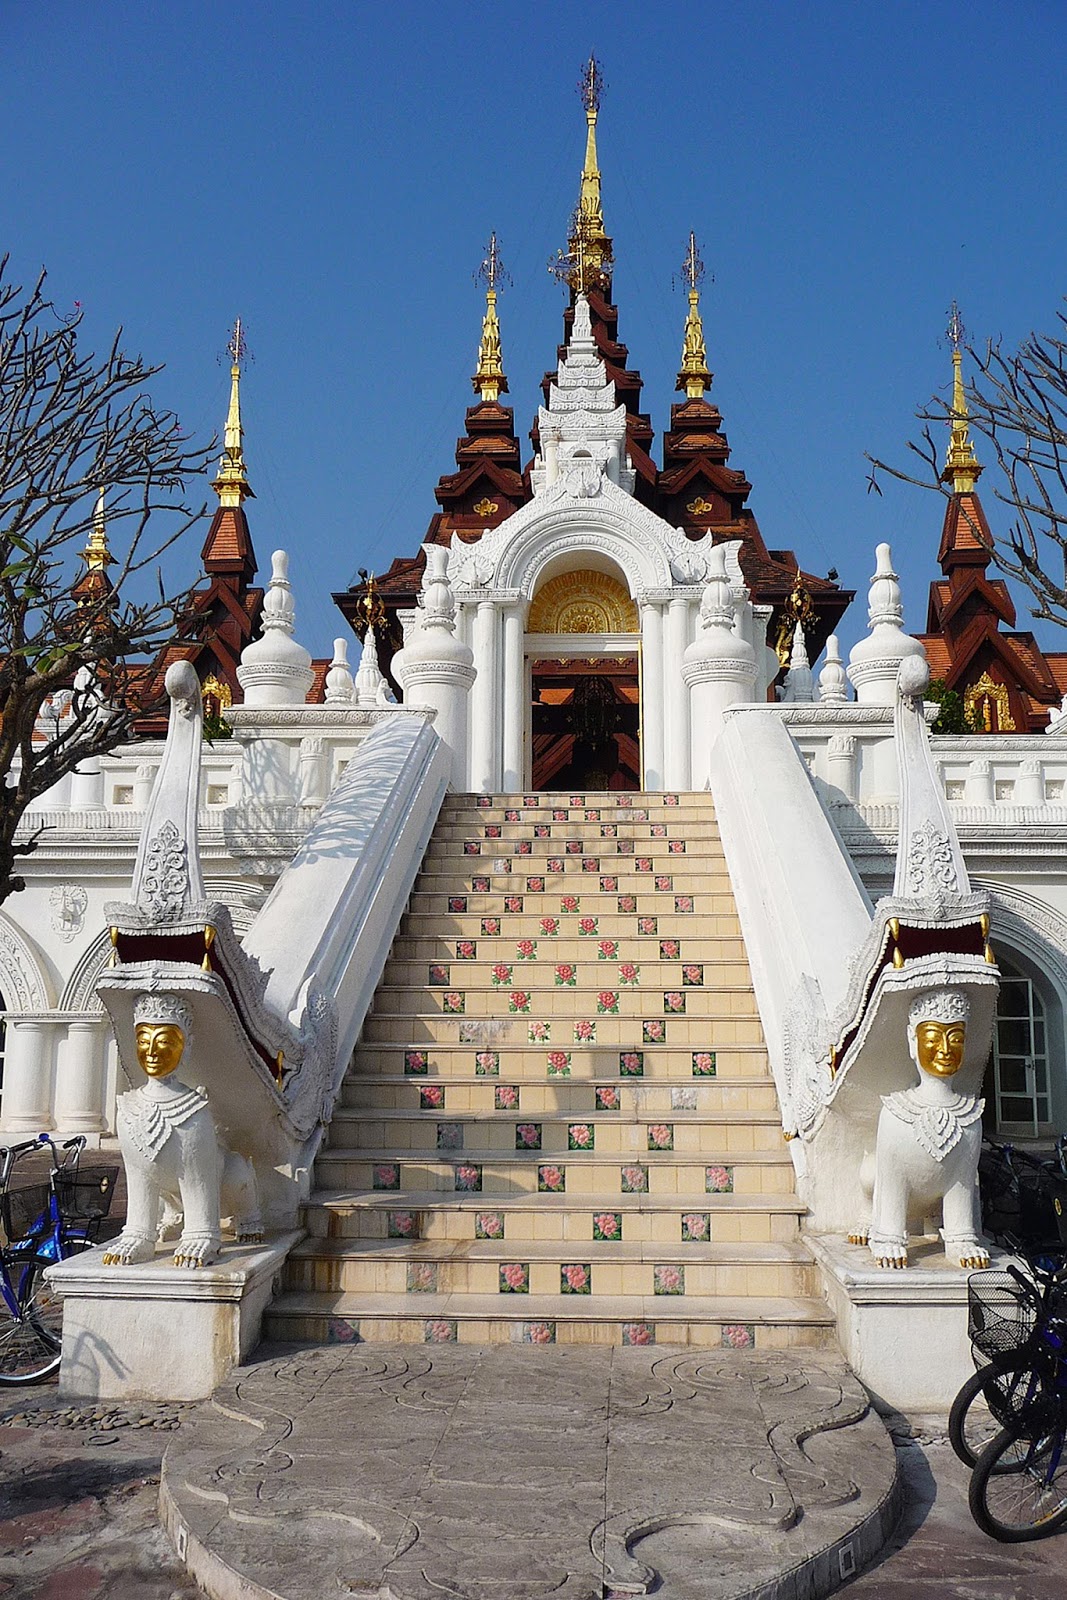 Chiang Mai, Thailand: The Dhara Dhevi 